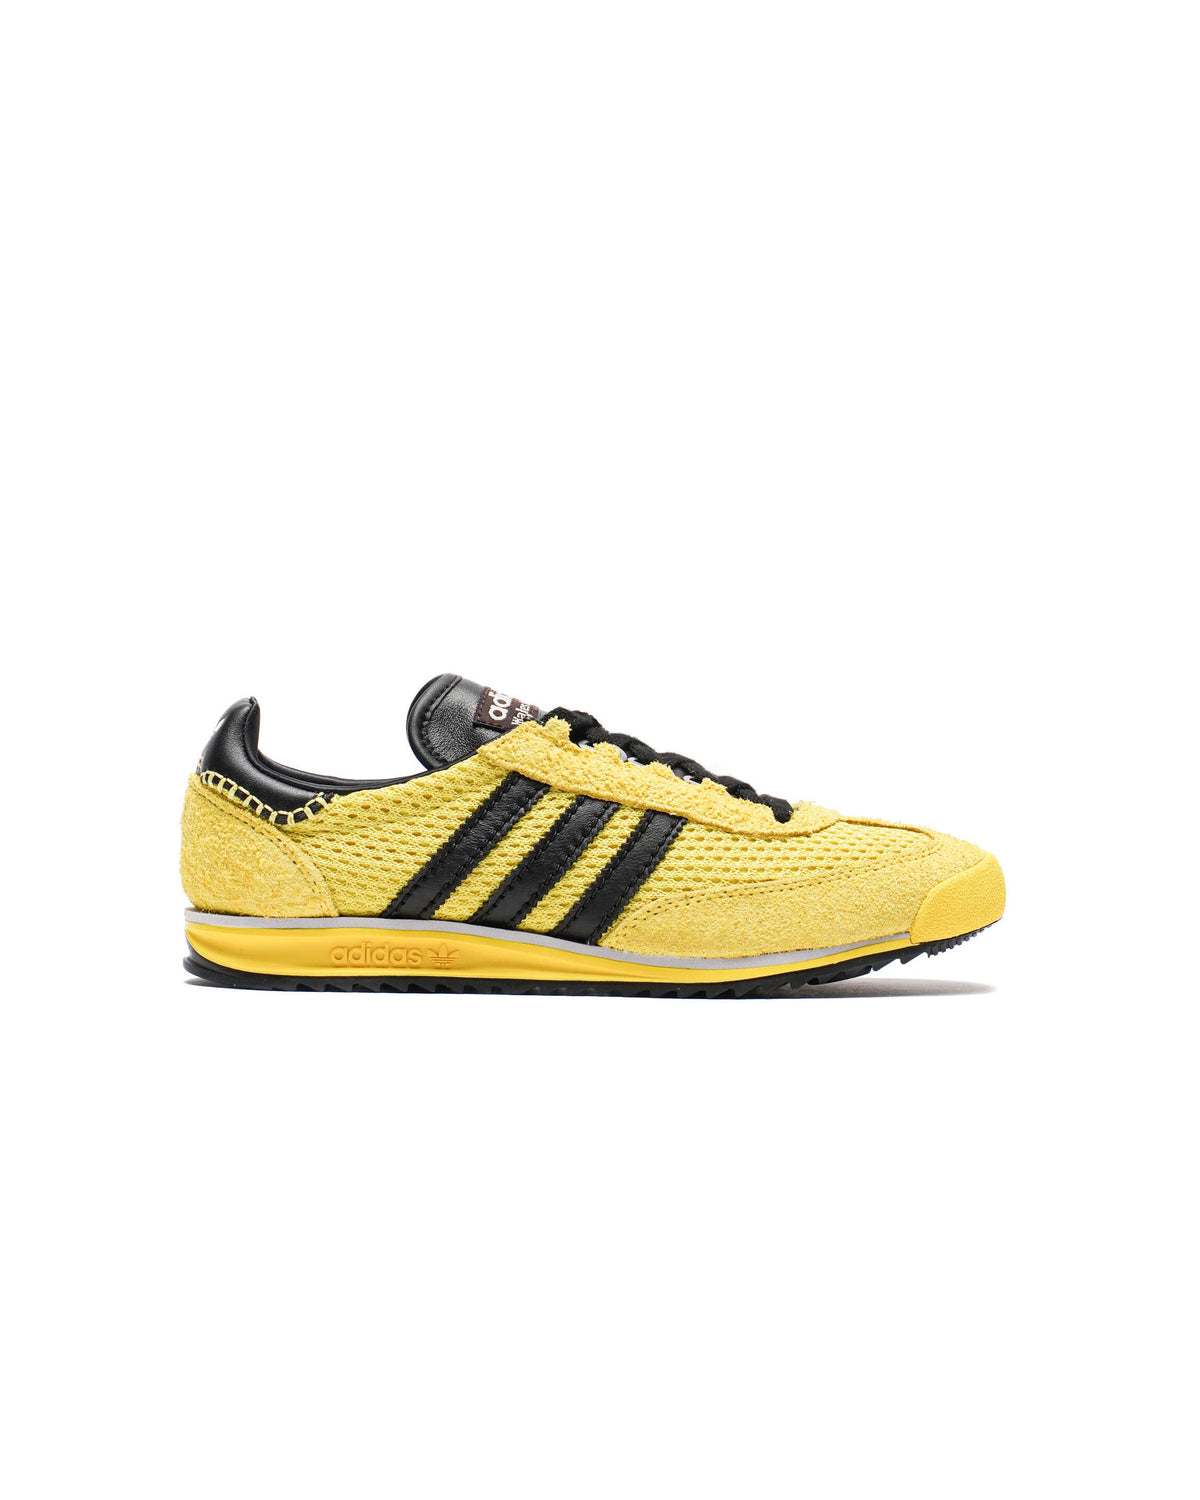 Adidas Originals x Wales Bonner SL76